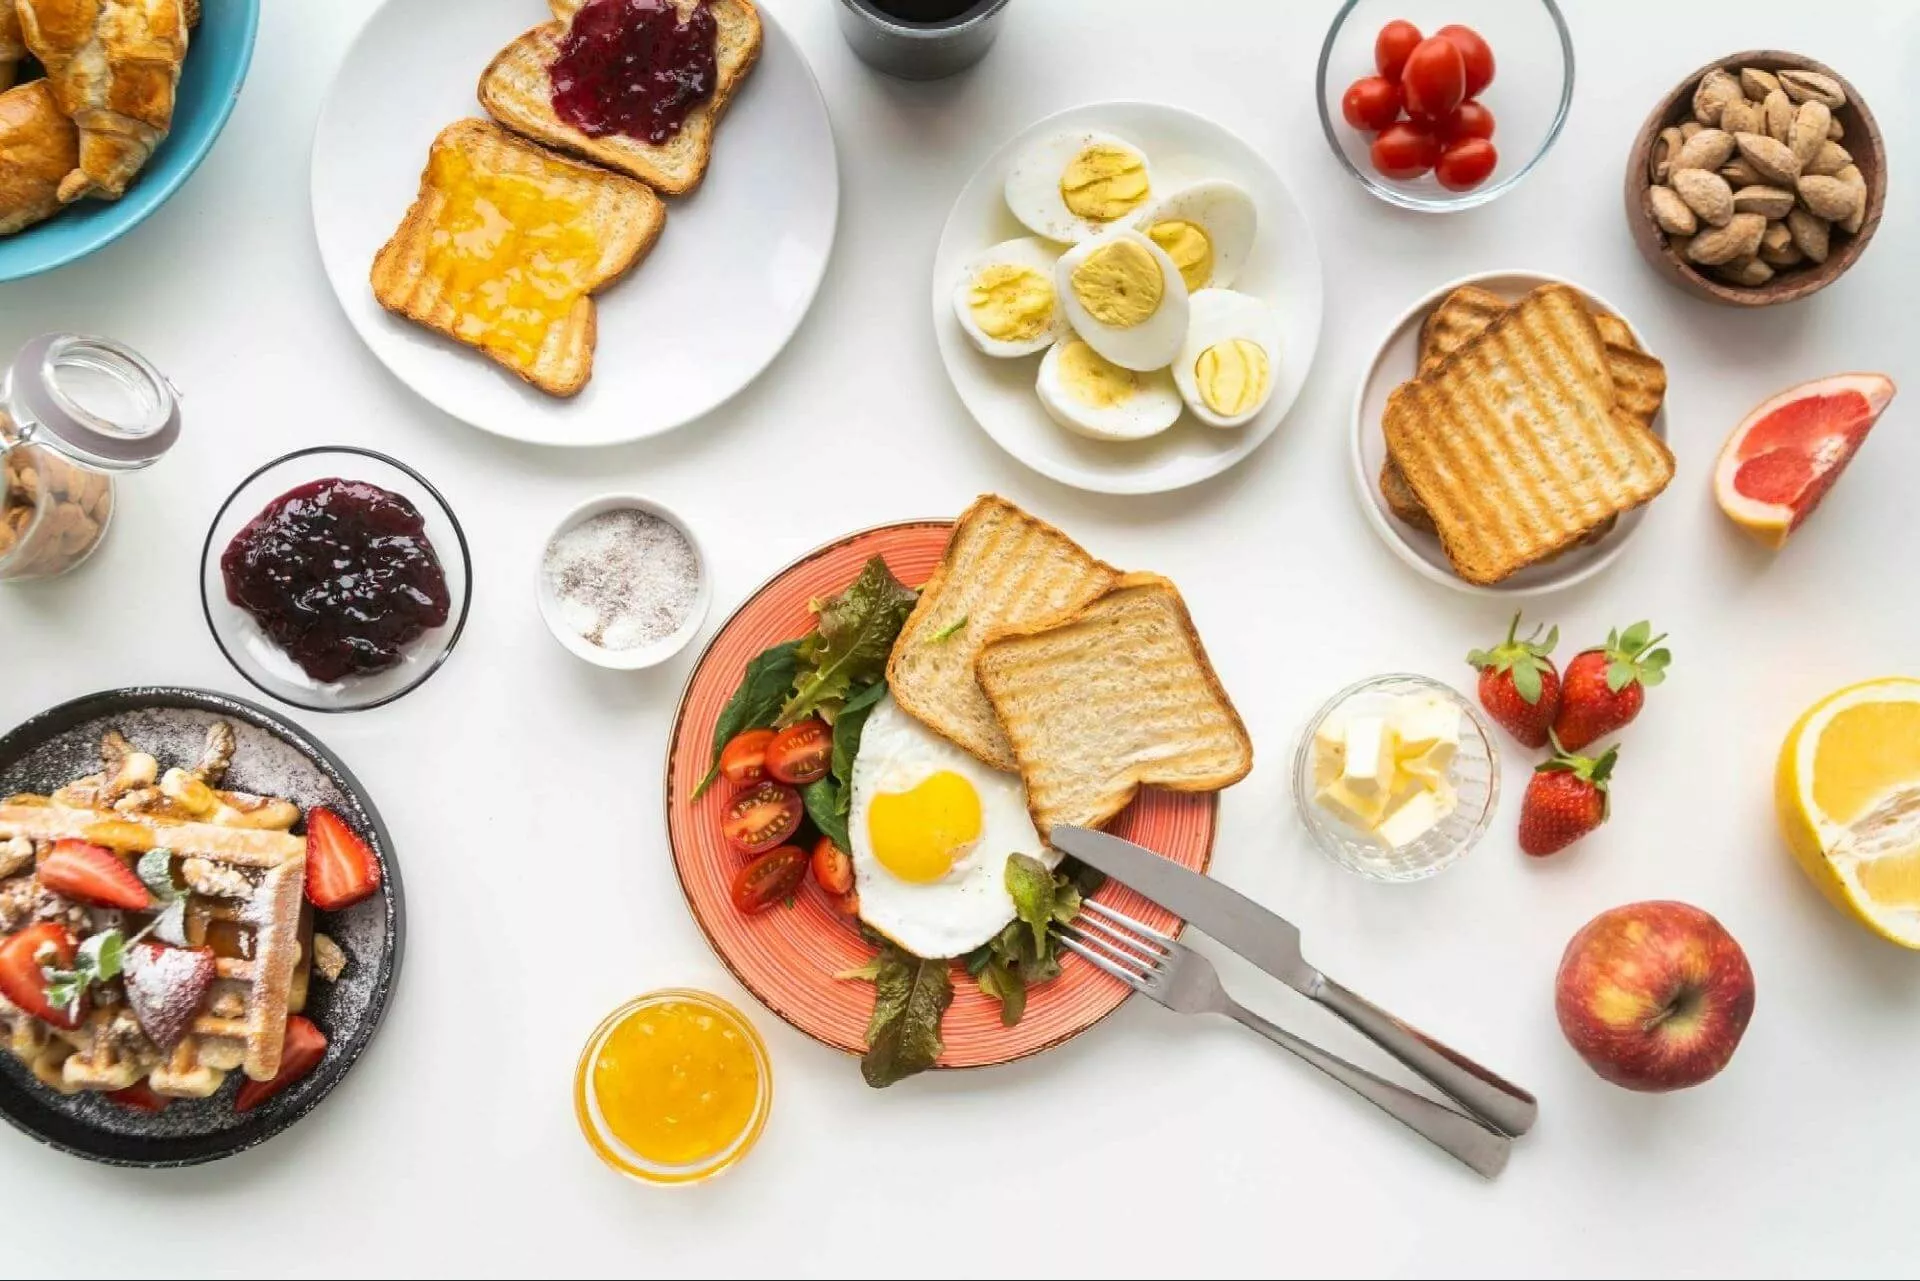 20 migliori idee per la colazione da gustare questa primavera